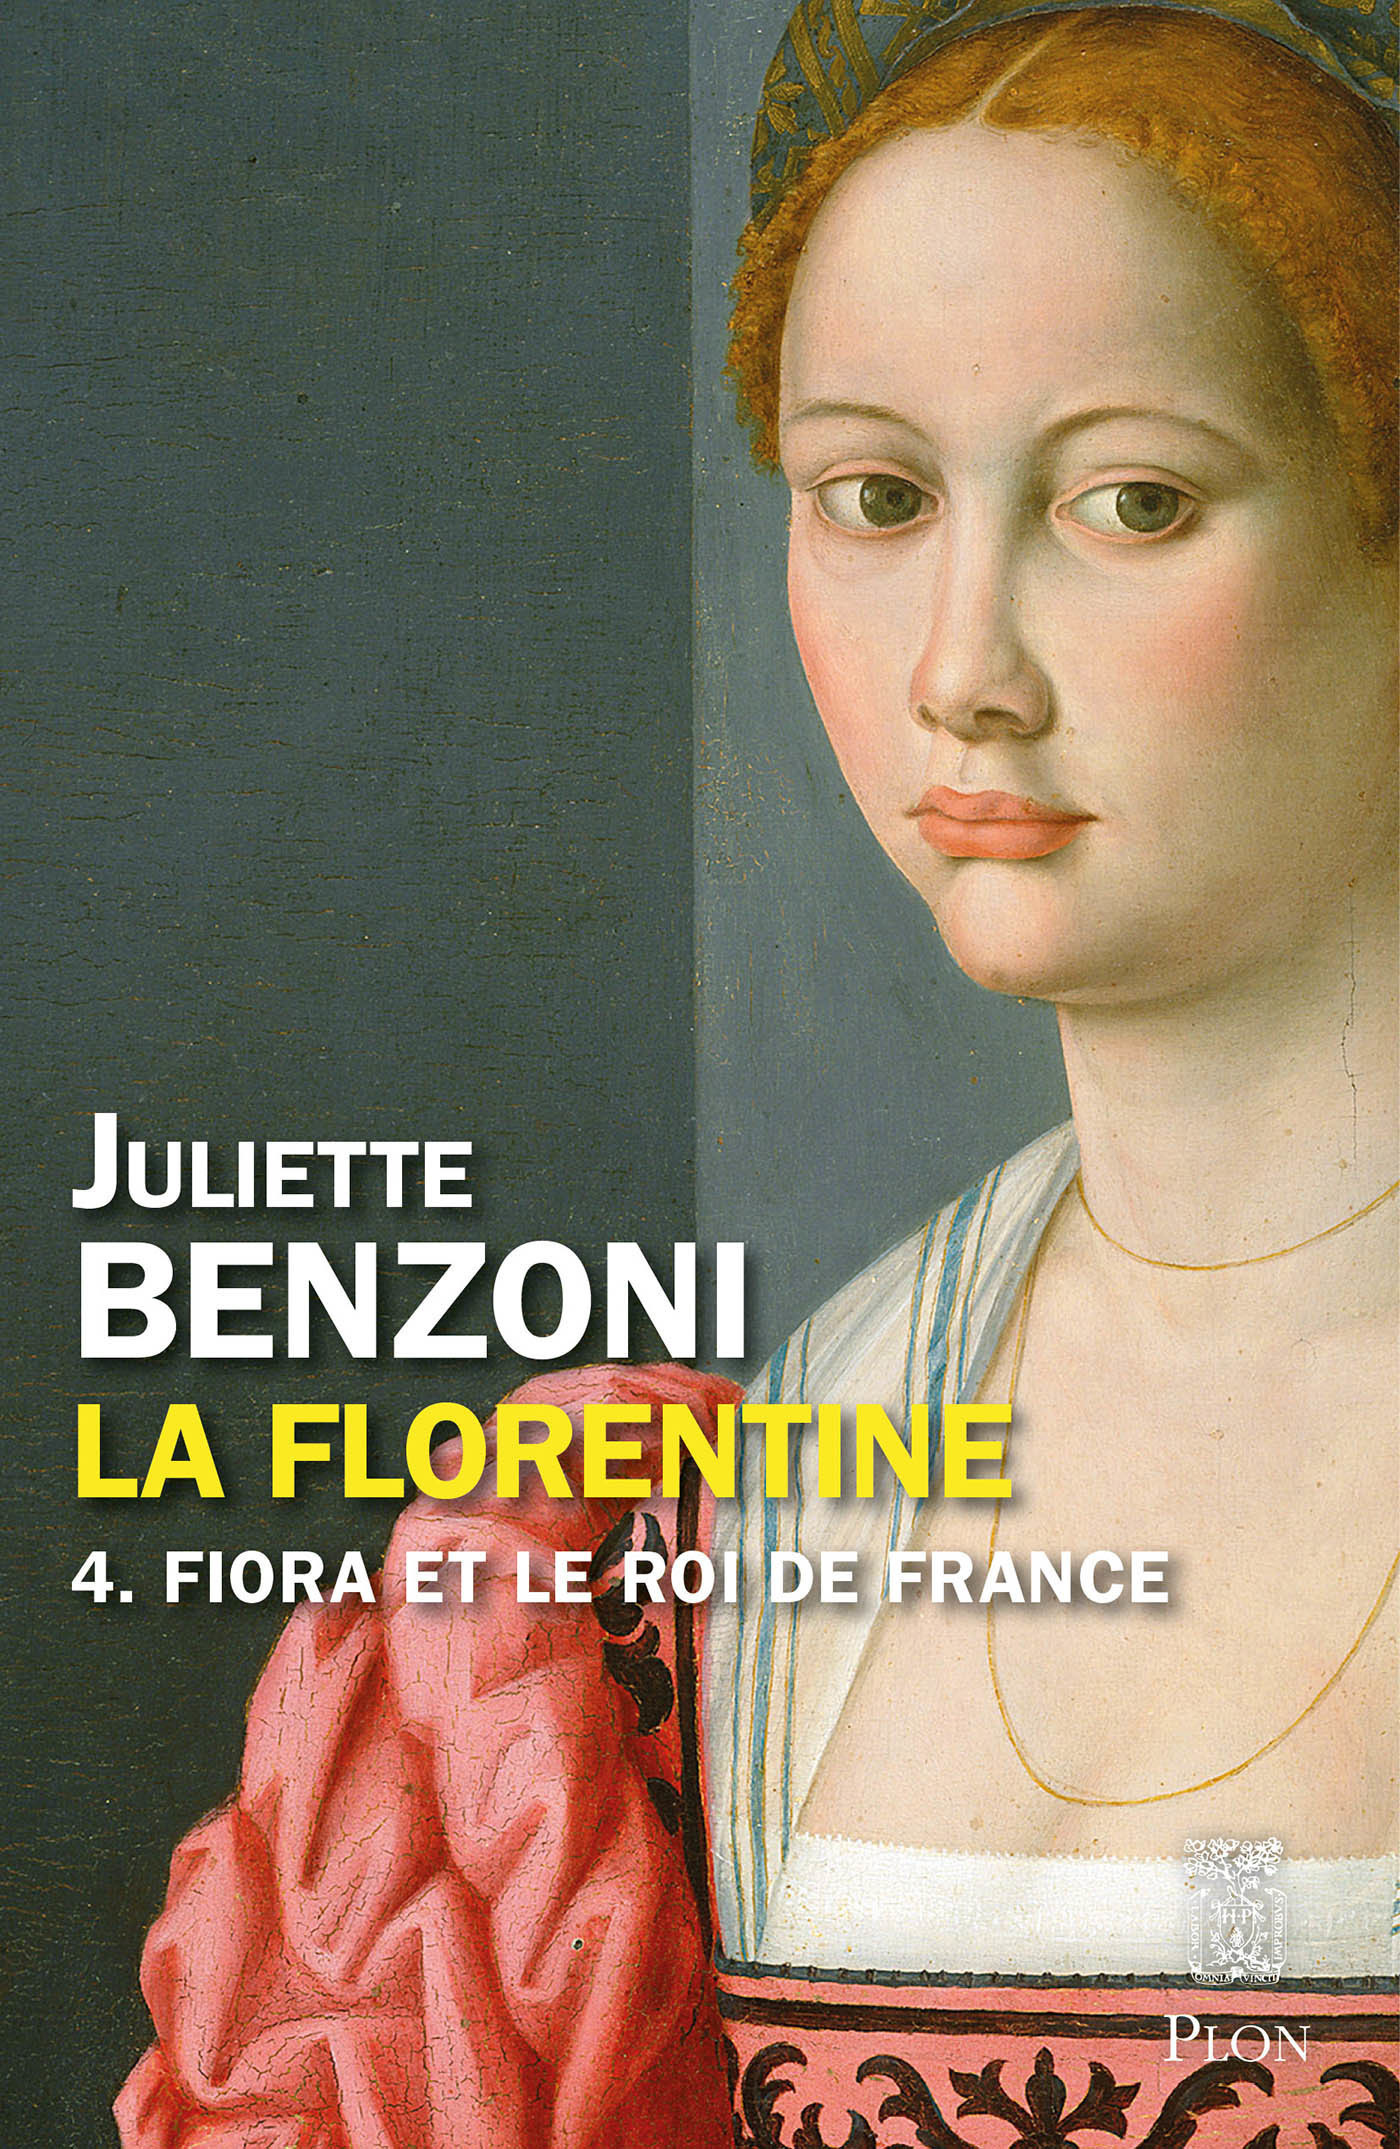 Afficher "La Florentine tome 4 - Fiora et le roi de France"